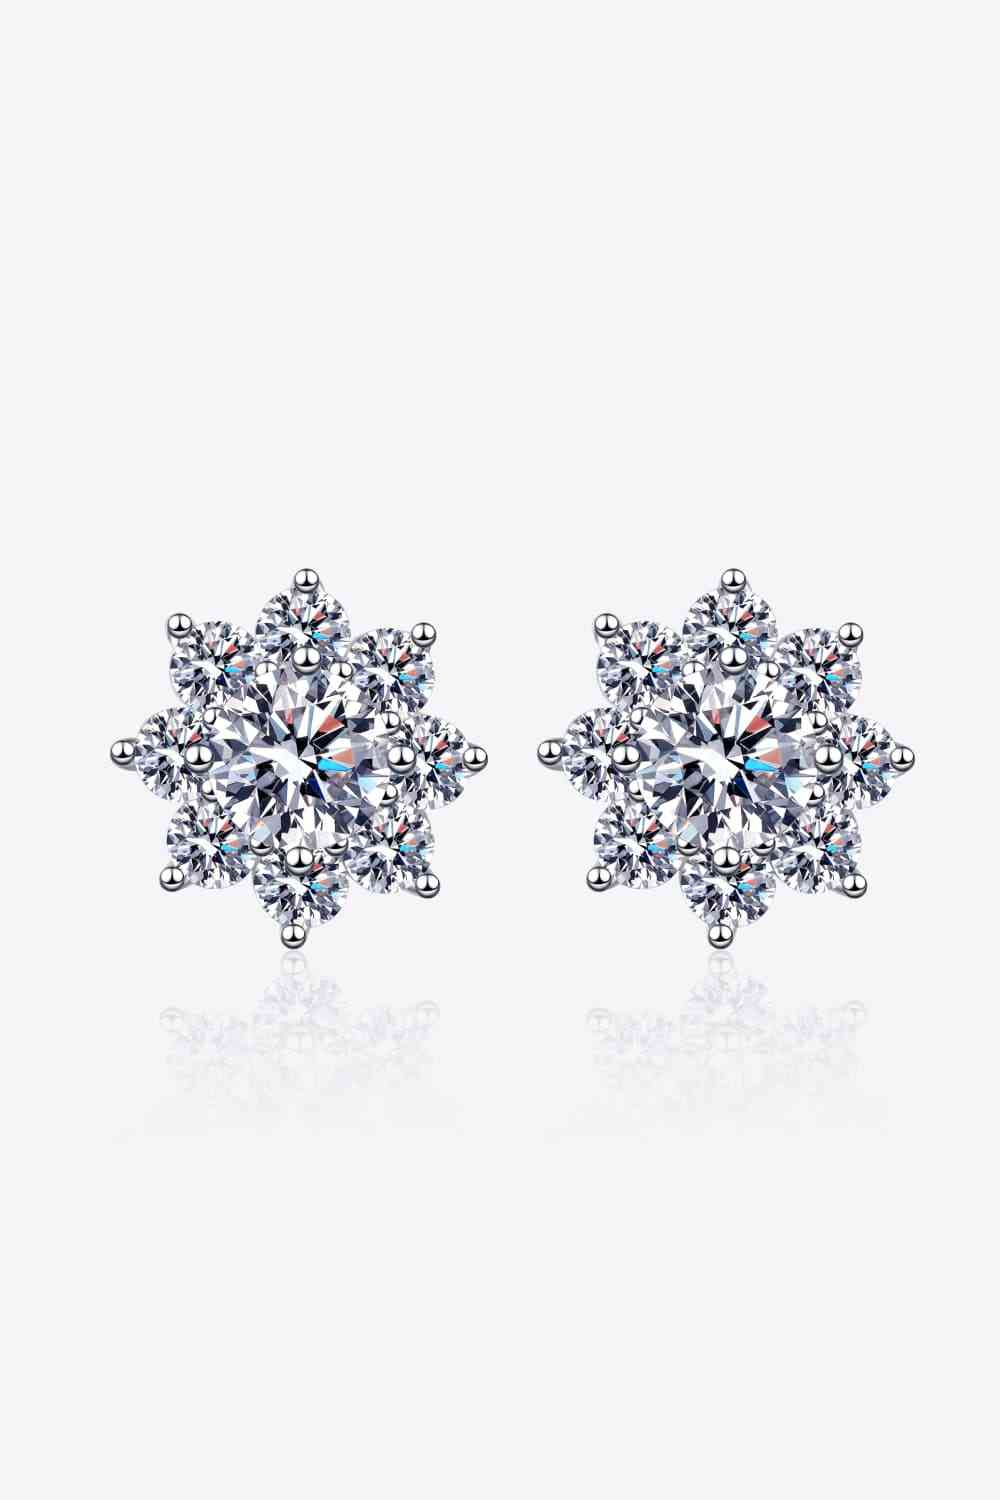 1 Carat Moissanite 925 Sterling Silver Flower Earrings - Tophatter Shopping Deals